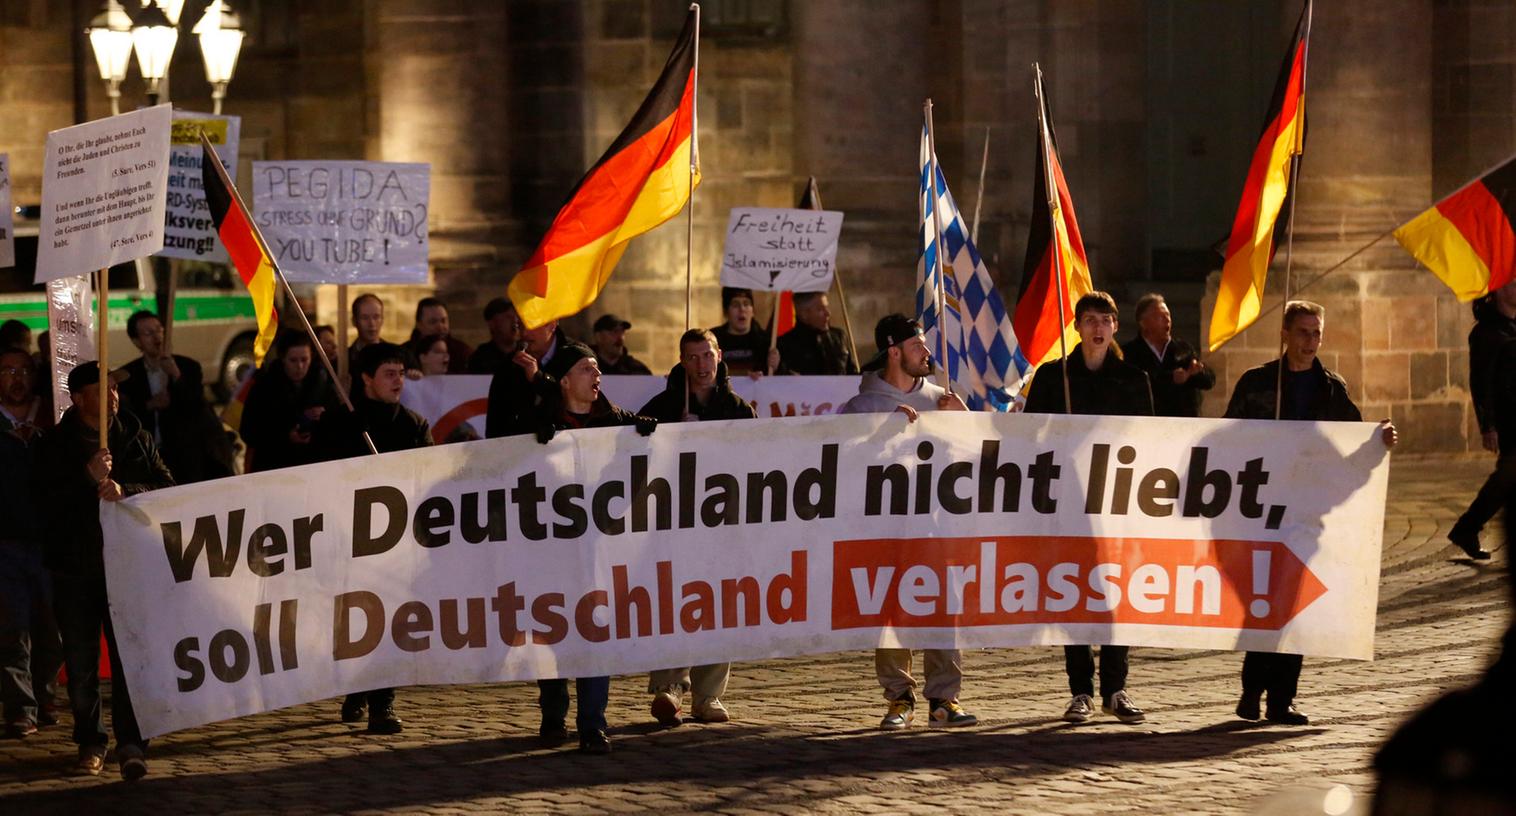 Nach dem neuerlichen Pegida-"Spaziergang" in Nürnberg droht den Islamfeinden jetzt juristischer Ärger.